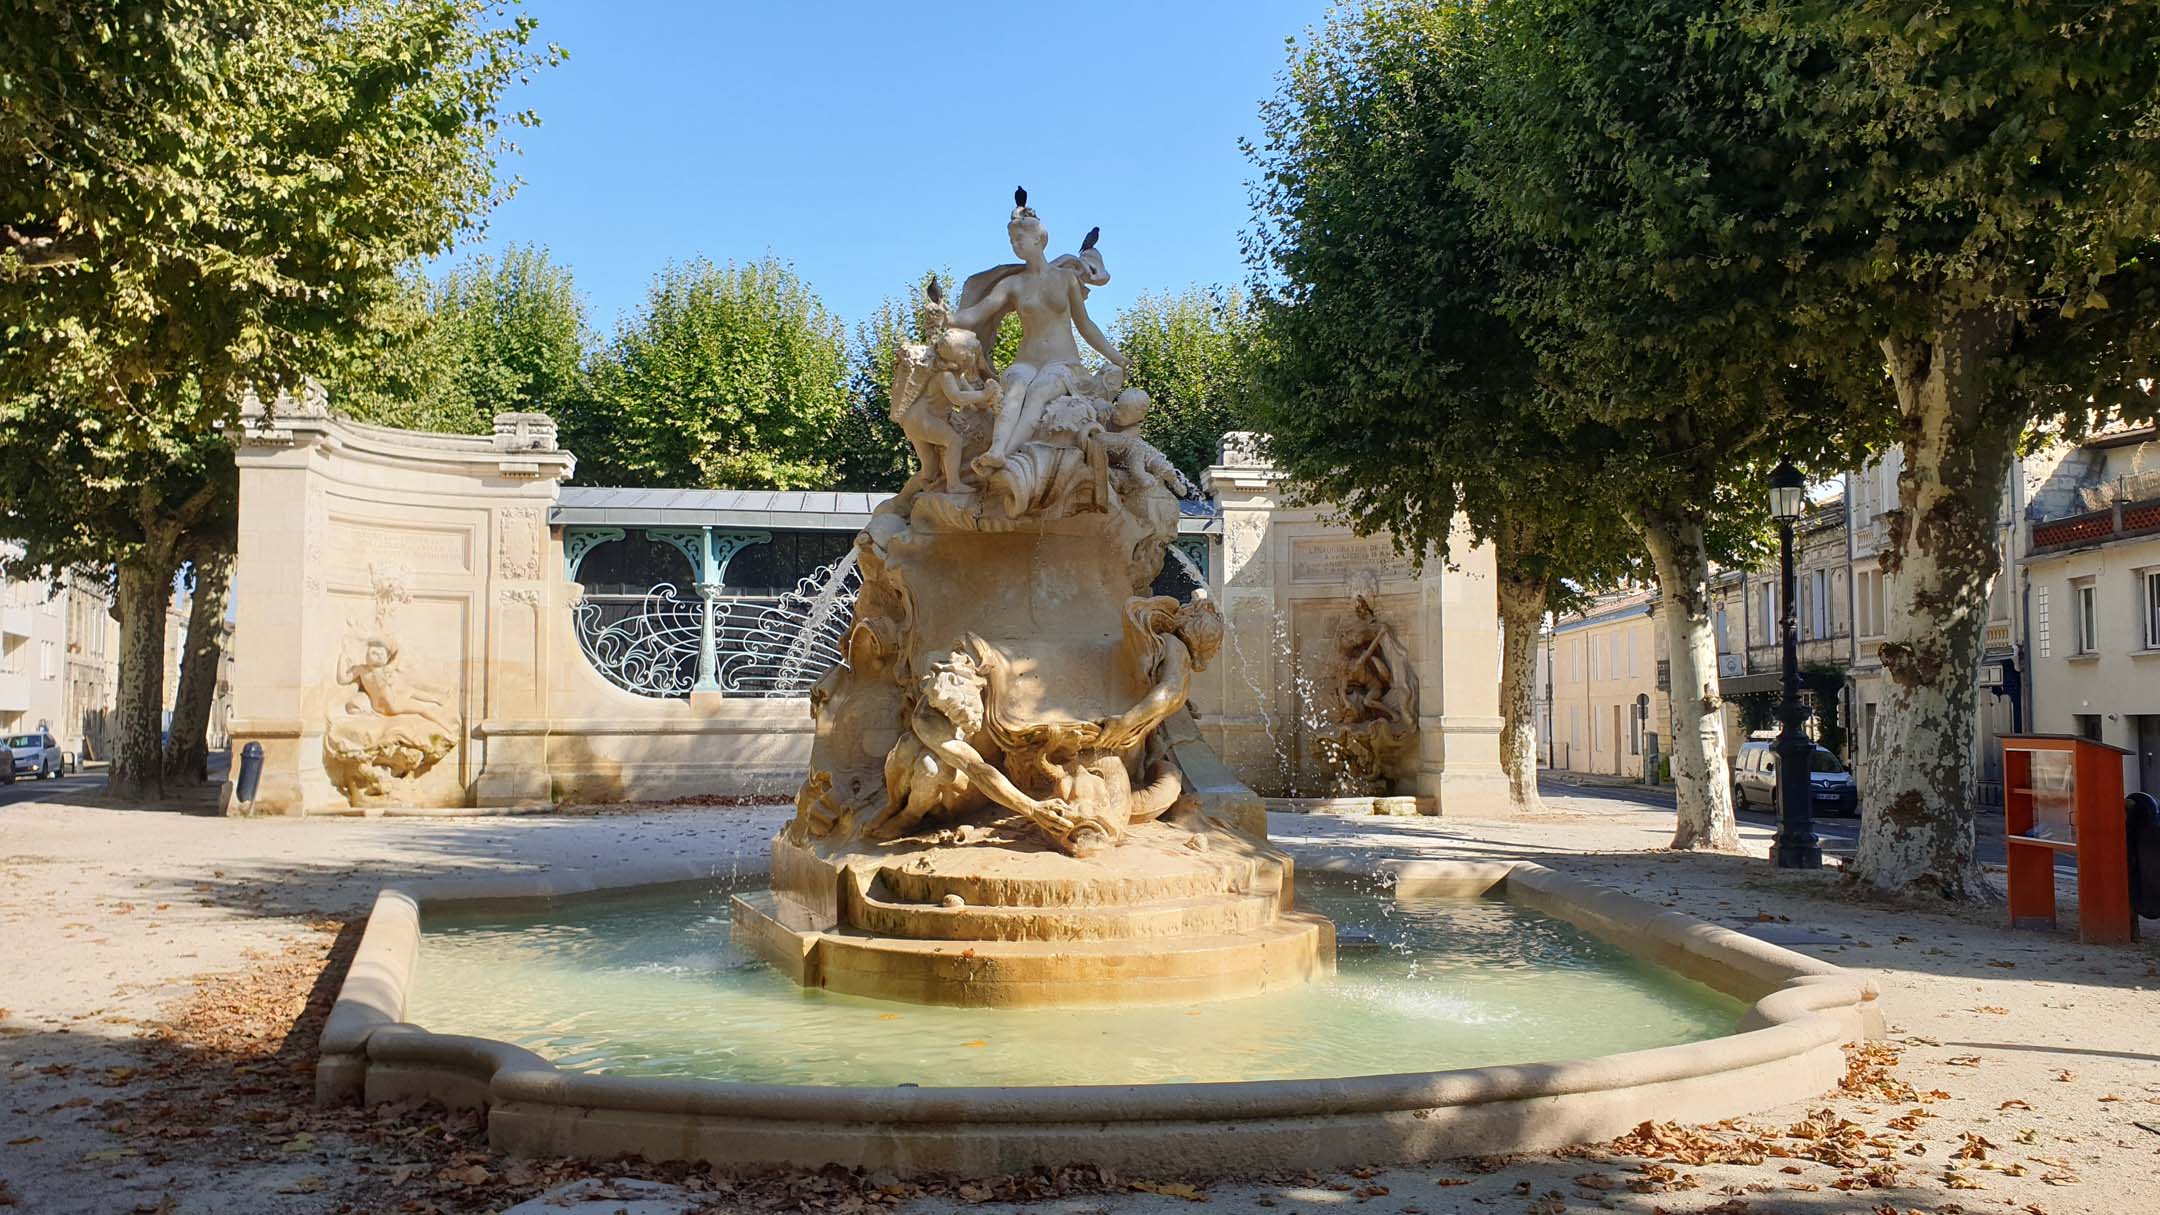 Fontaine Amédée-Larrieu